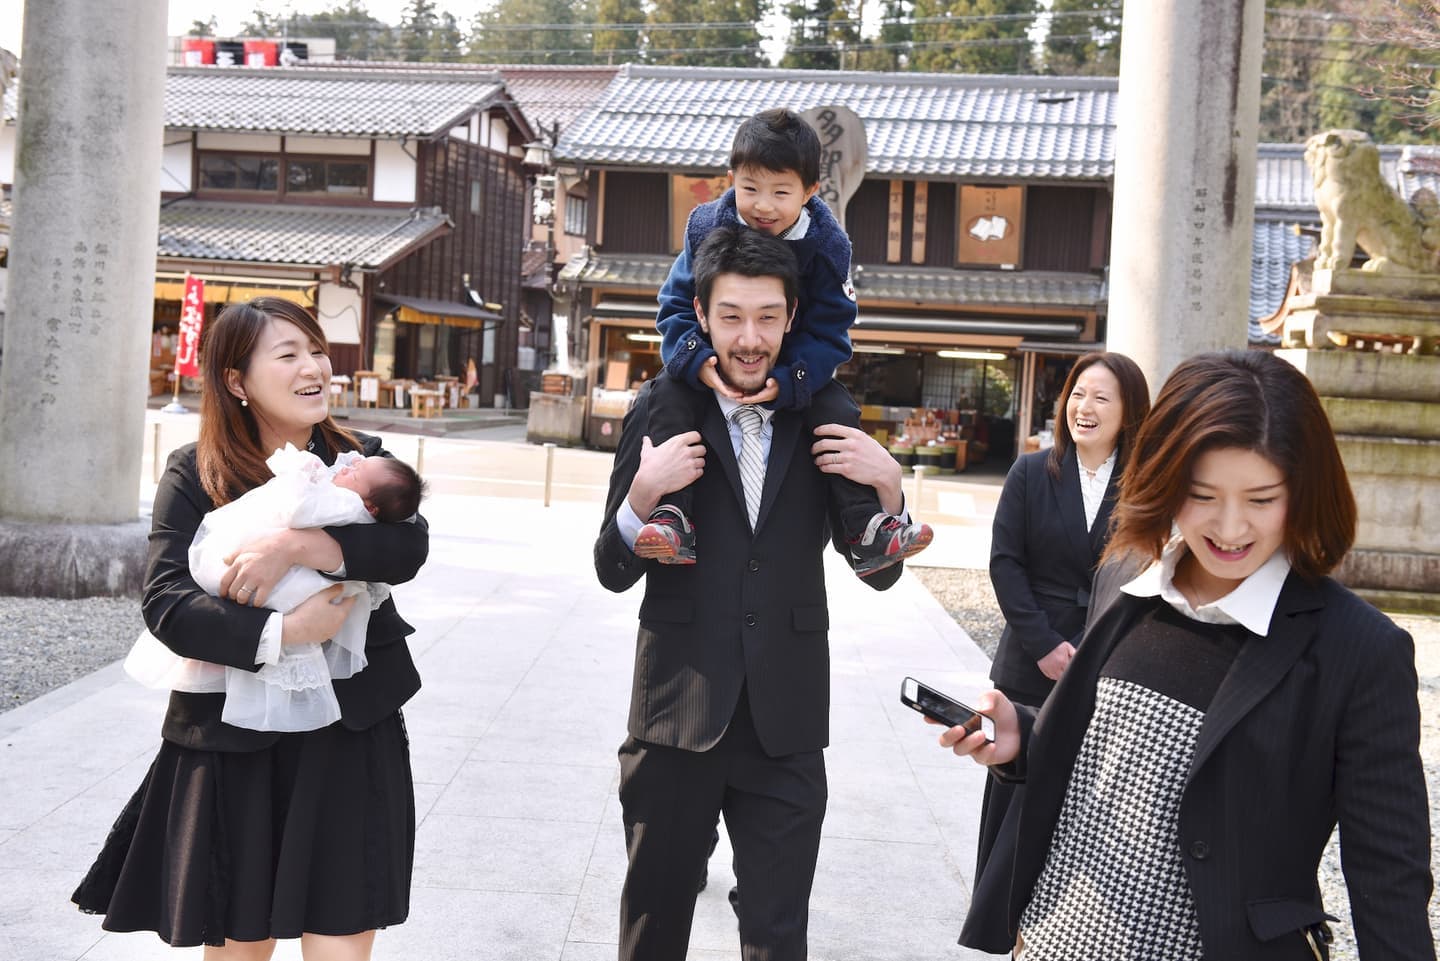 多賀大社でお宮参りをした赤ちゃんと家族